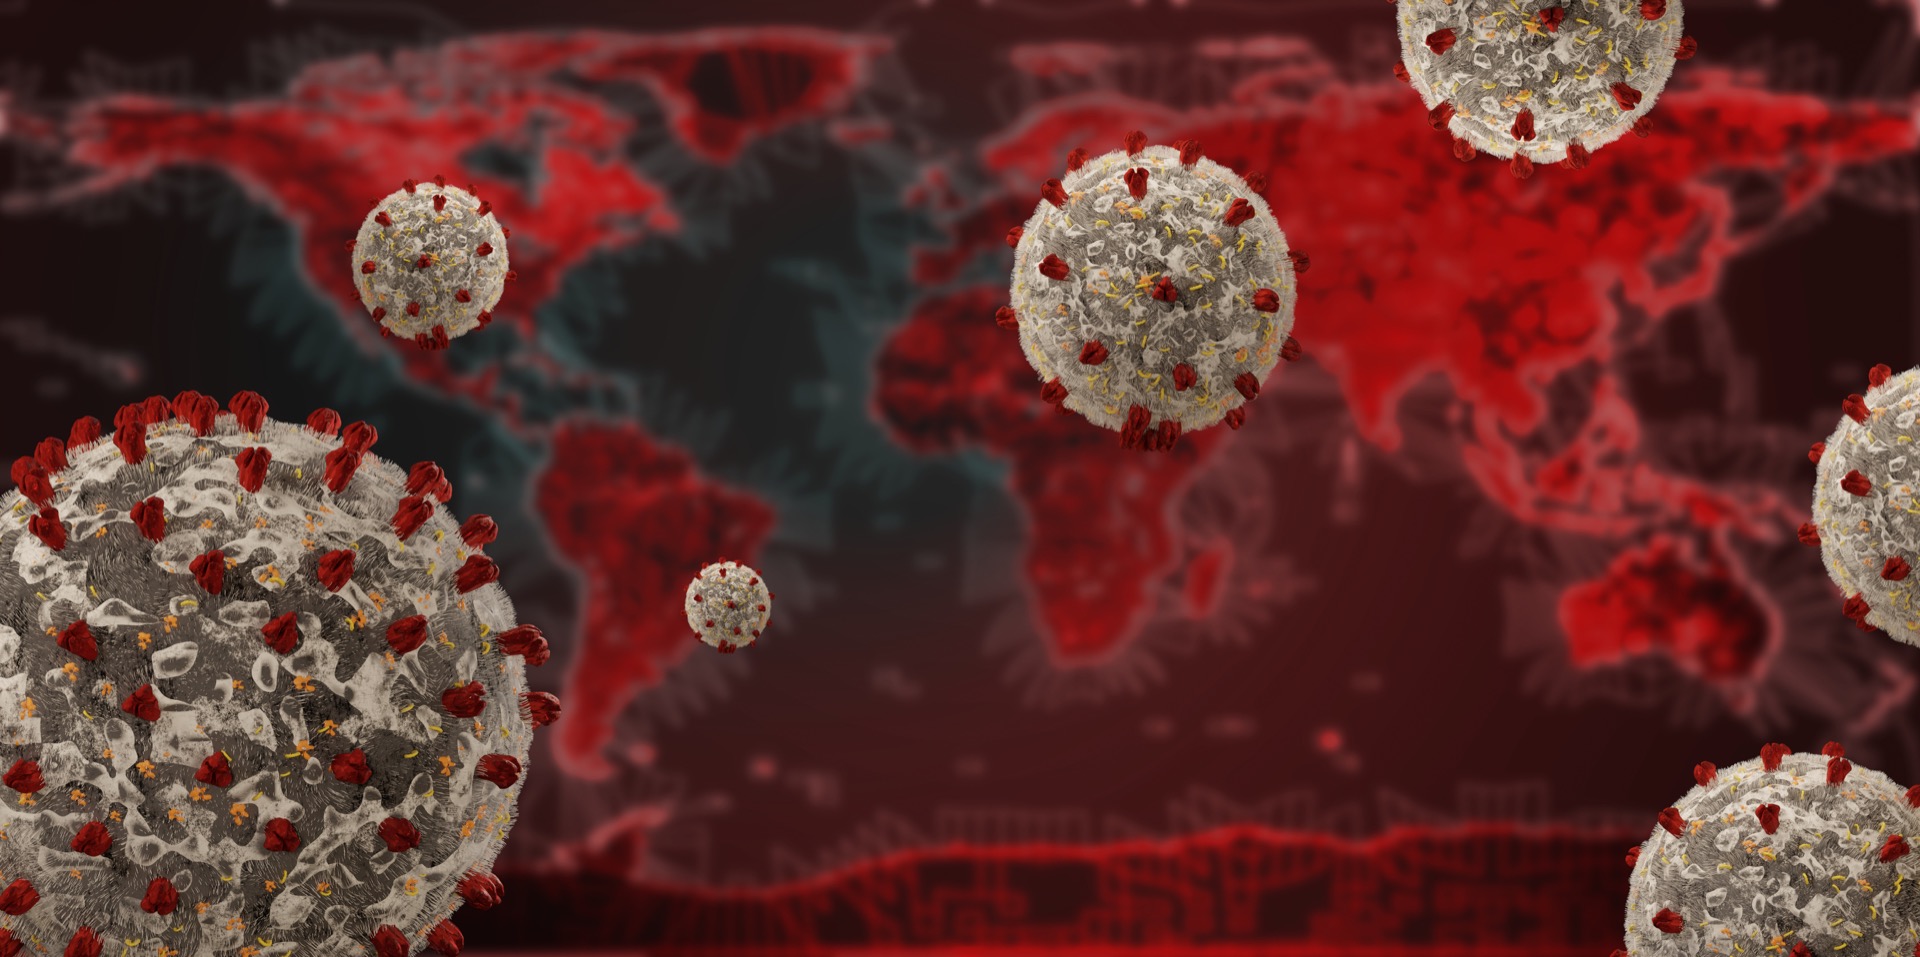 Tout au long de l'histoire de l'humanité des virus ont émergé et infecté l'humanité, comment les empêcher de devenir des pandémies mortelles ? © Wetzkaz, Adobe Stock